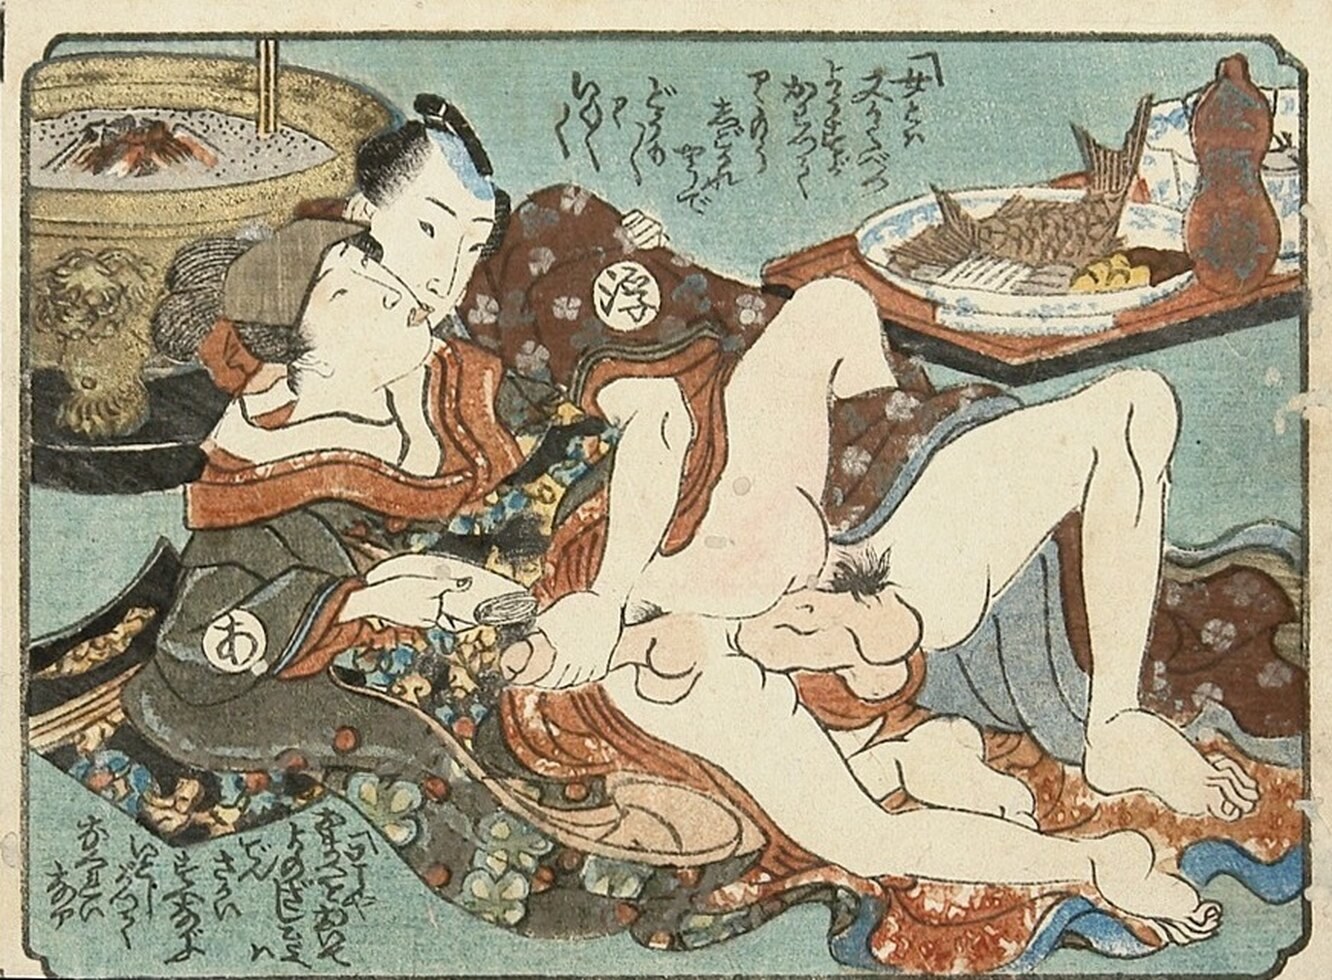 япония эротика секс фото 16